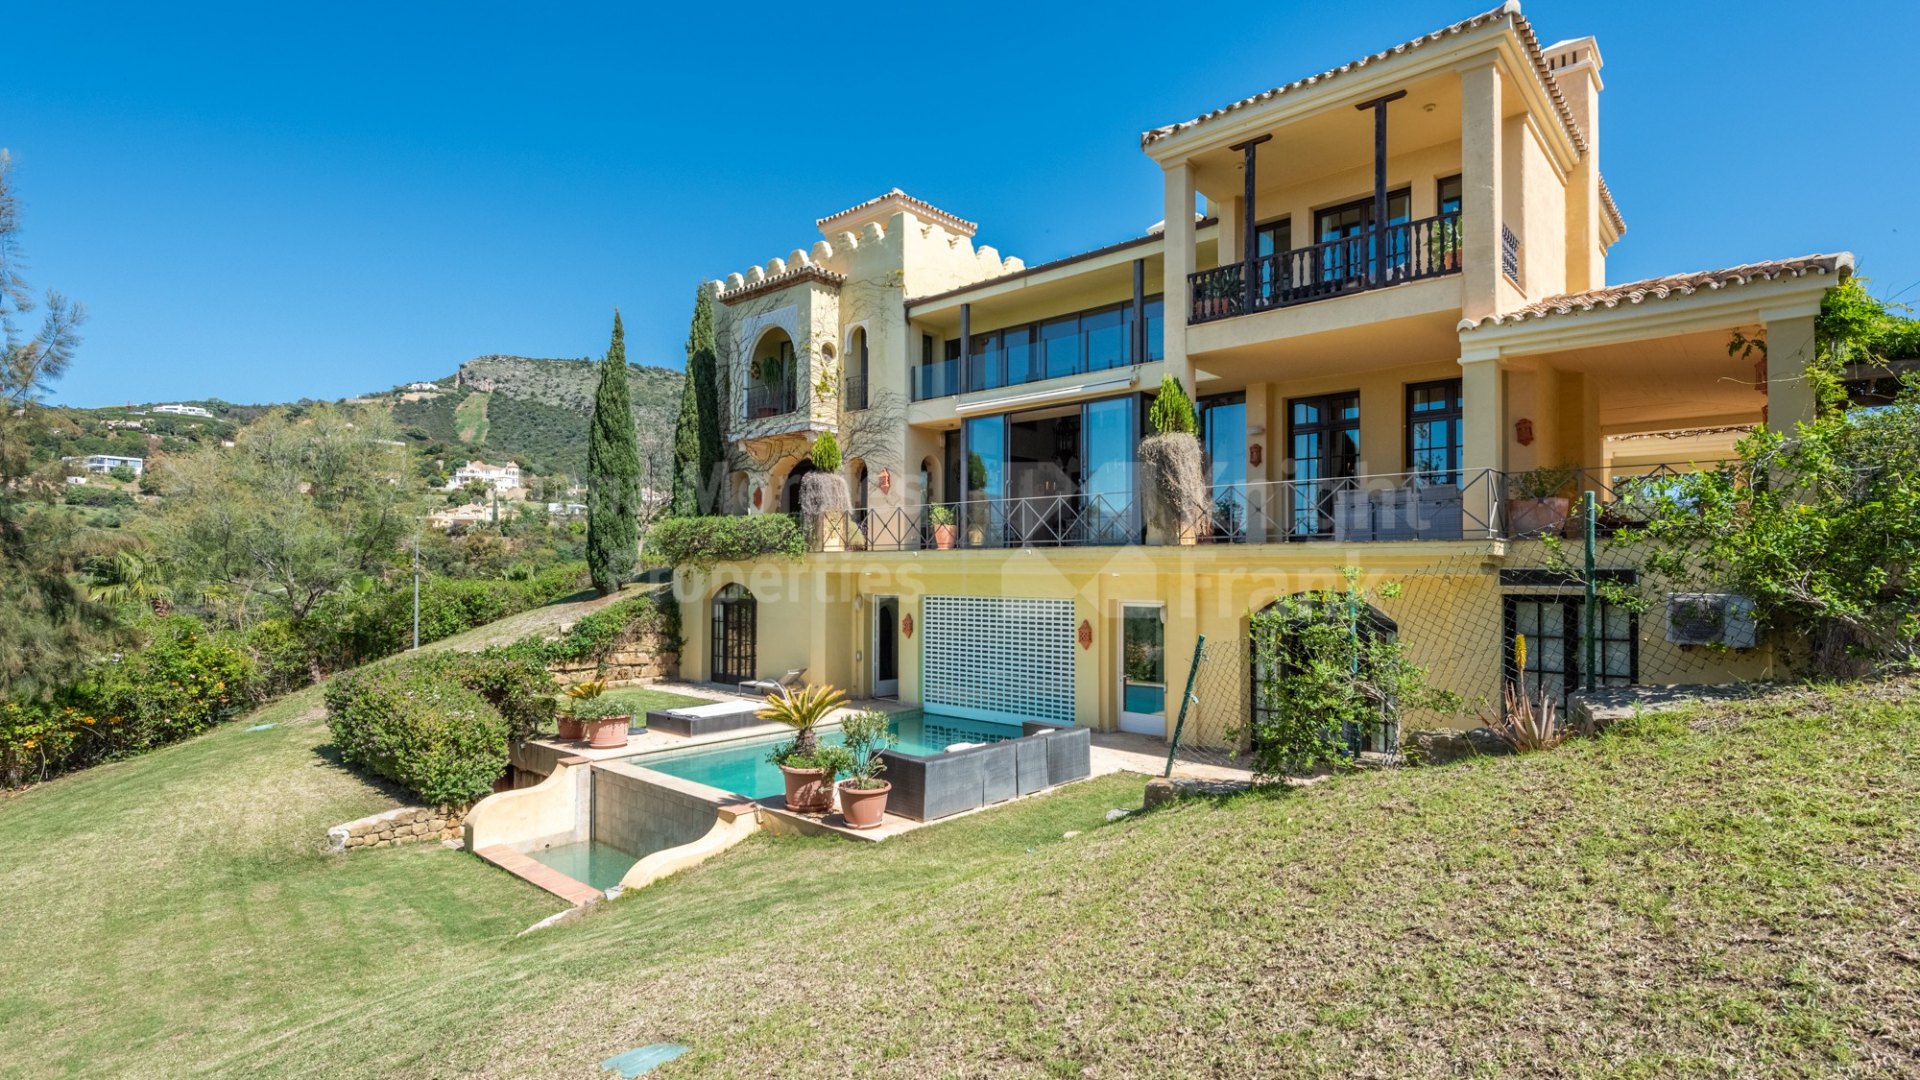 Marbella Club Golf Resort, Дом в стиле Альгамбра в престижном месте с захватывающими видами